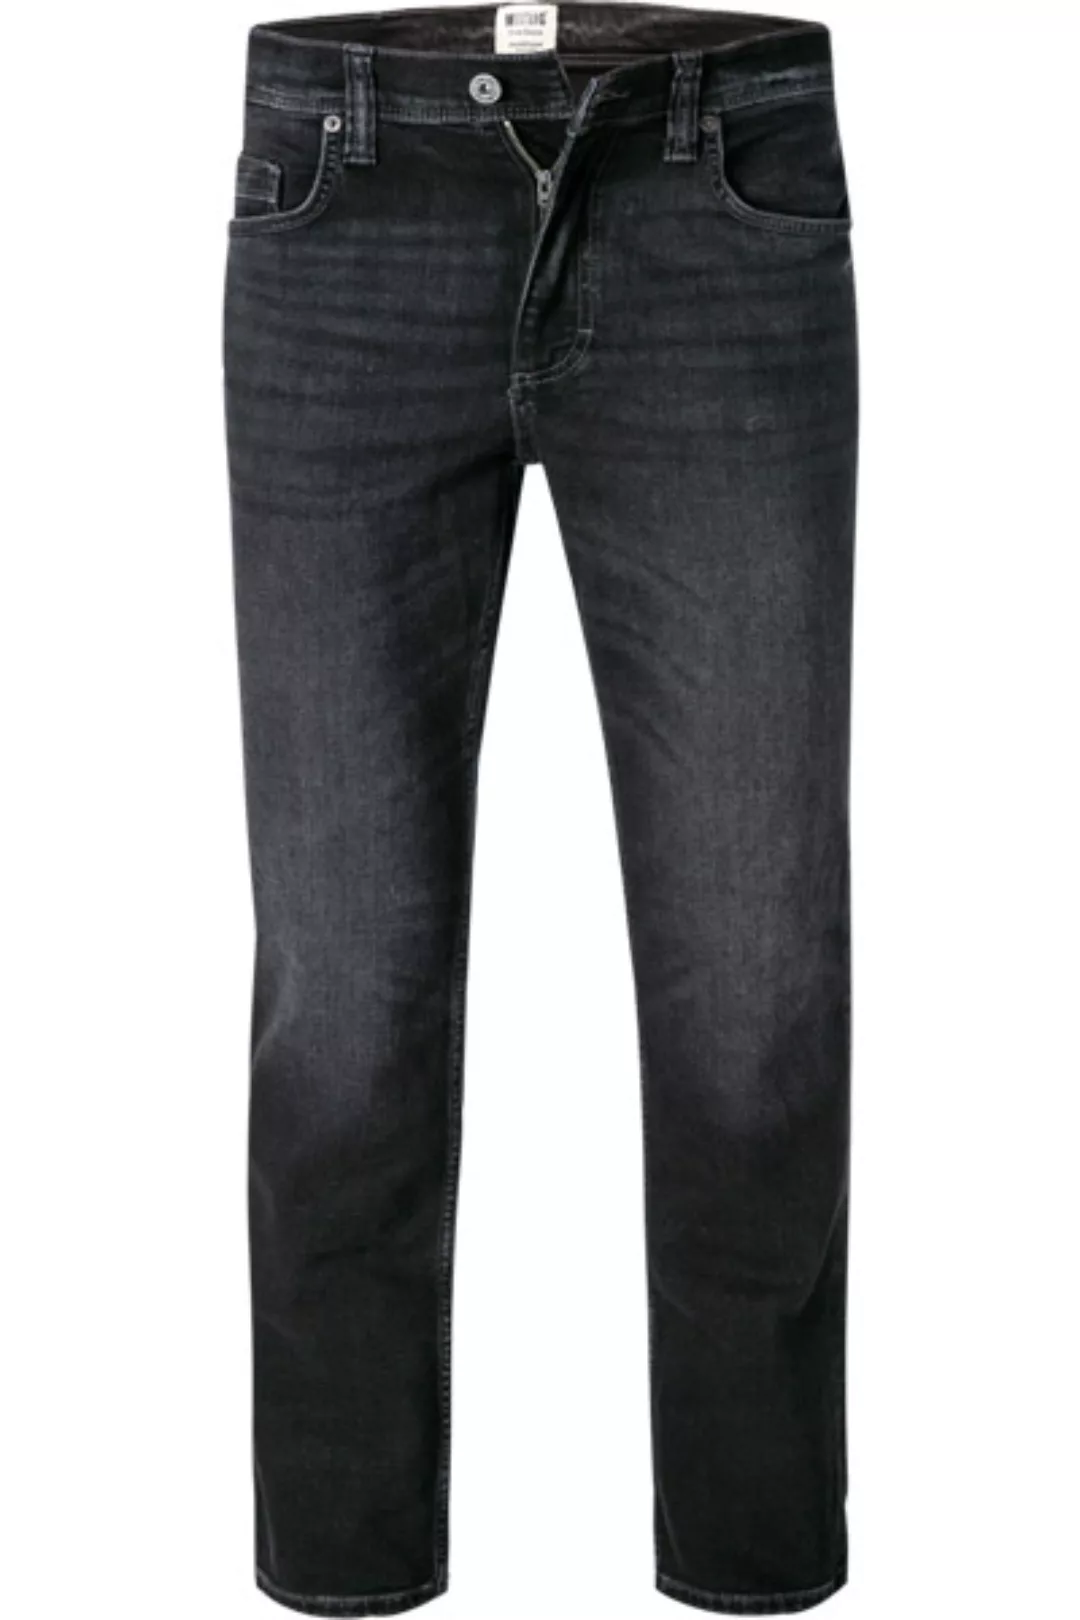 MUSTANG Jeans 1011549/4000/883 günstig online kaufen